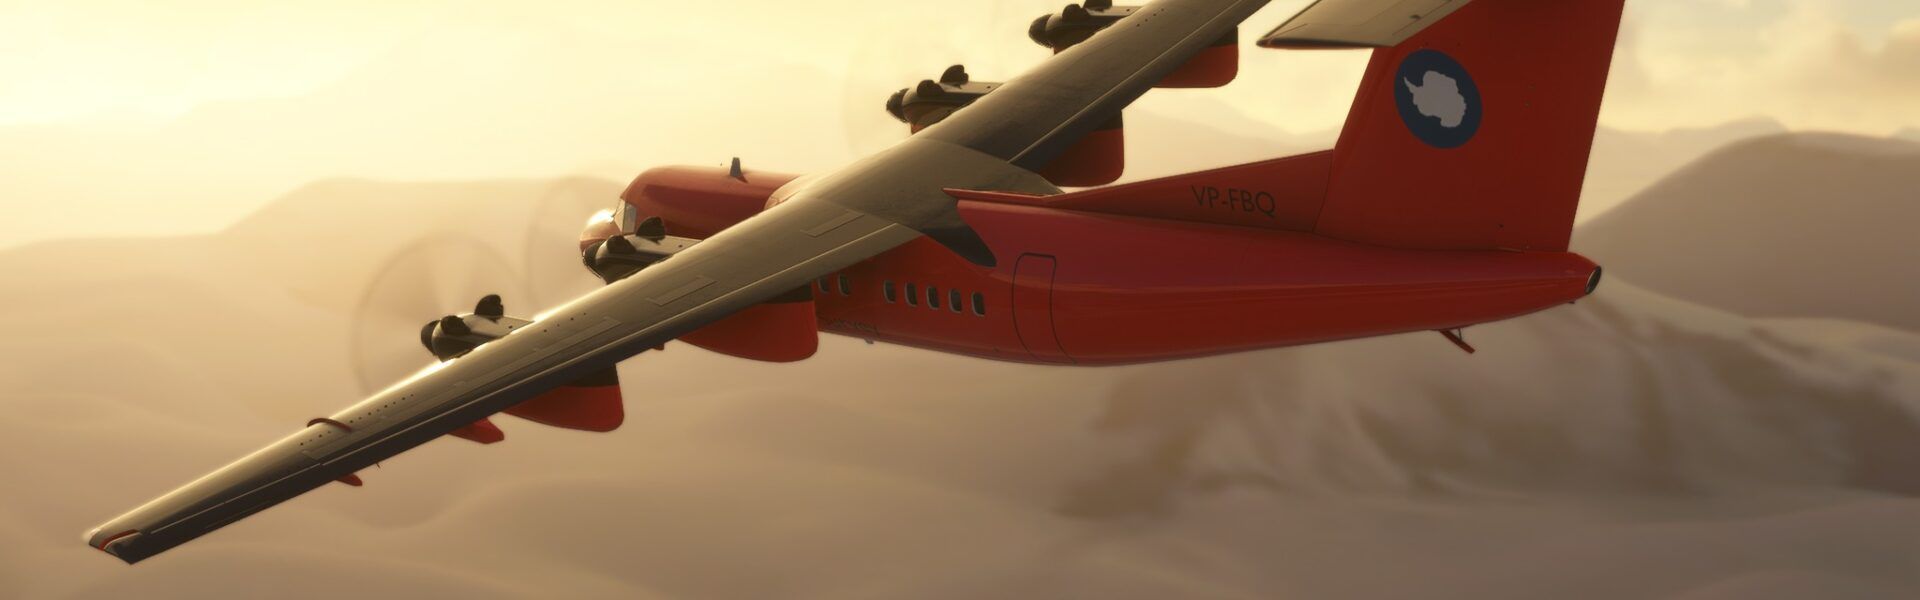 SimWorks Studios Vorschau Dash 7 für Microsoft Flight Simulator